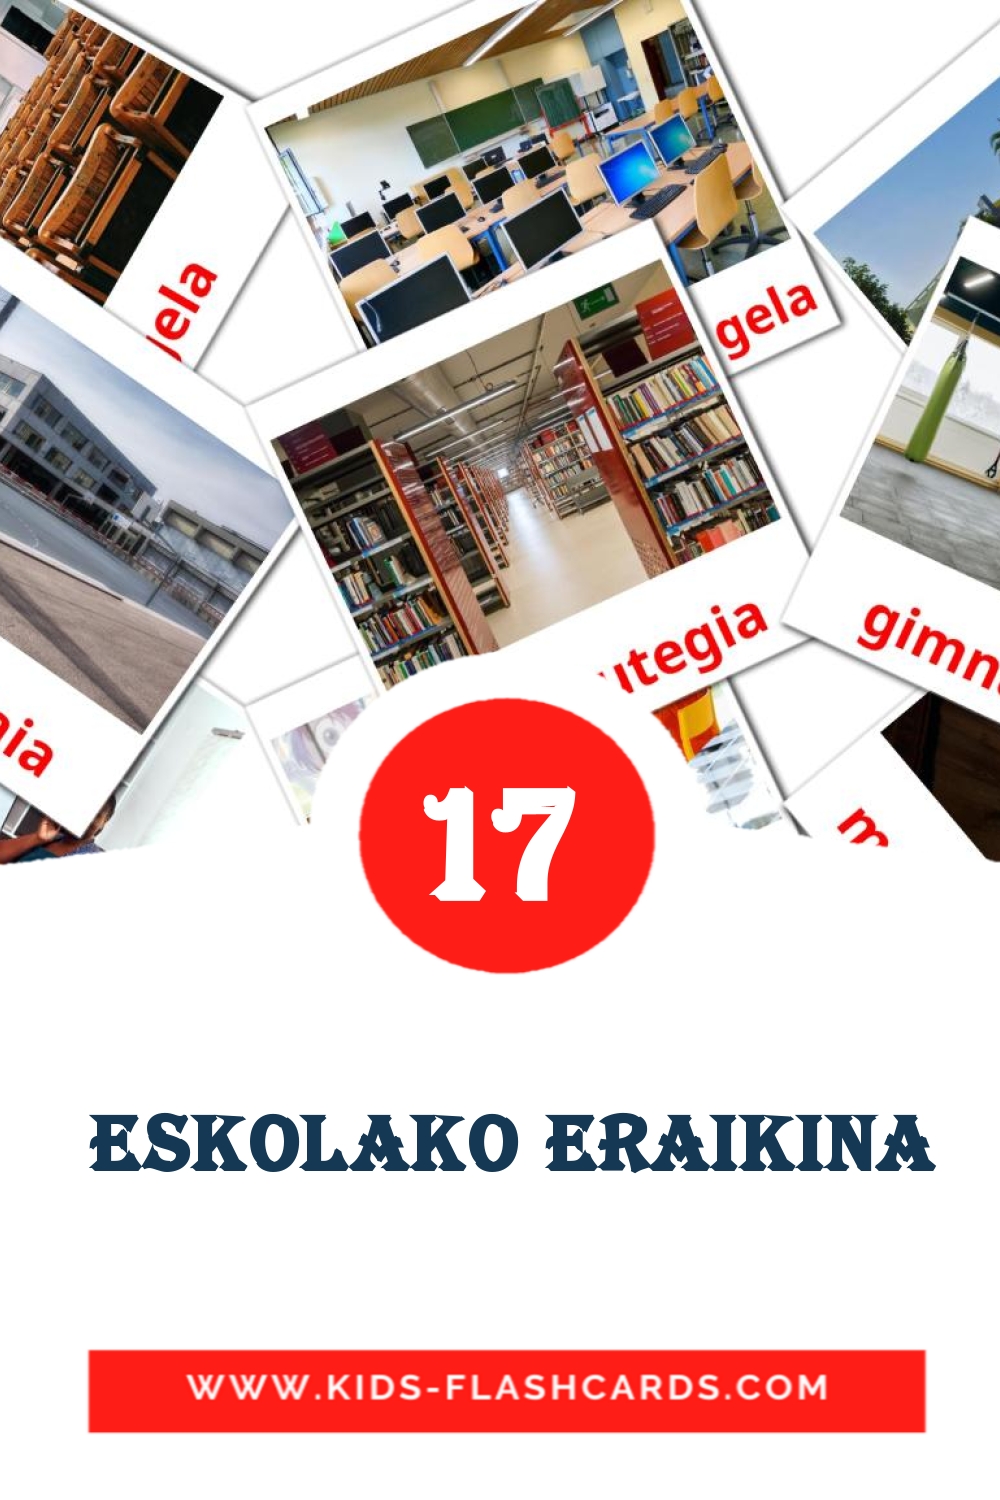 17 carte illustrate di  Eskolako eraikina per la scuola materna in basco